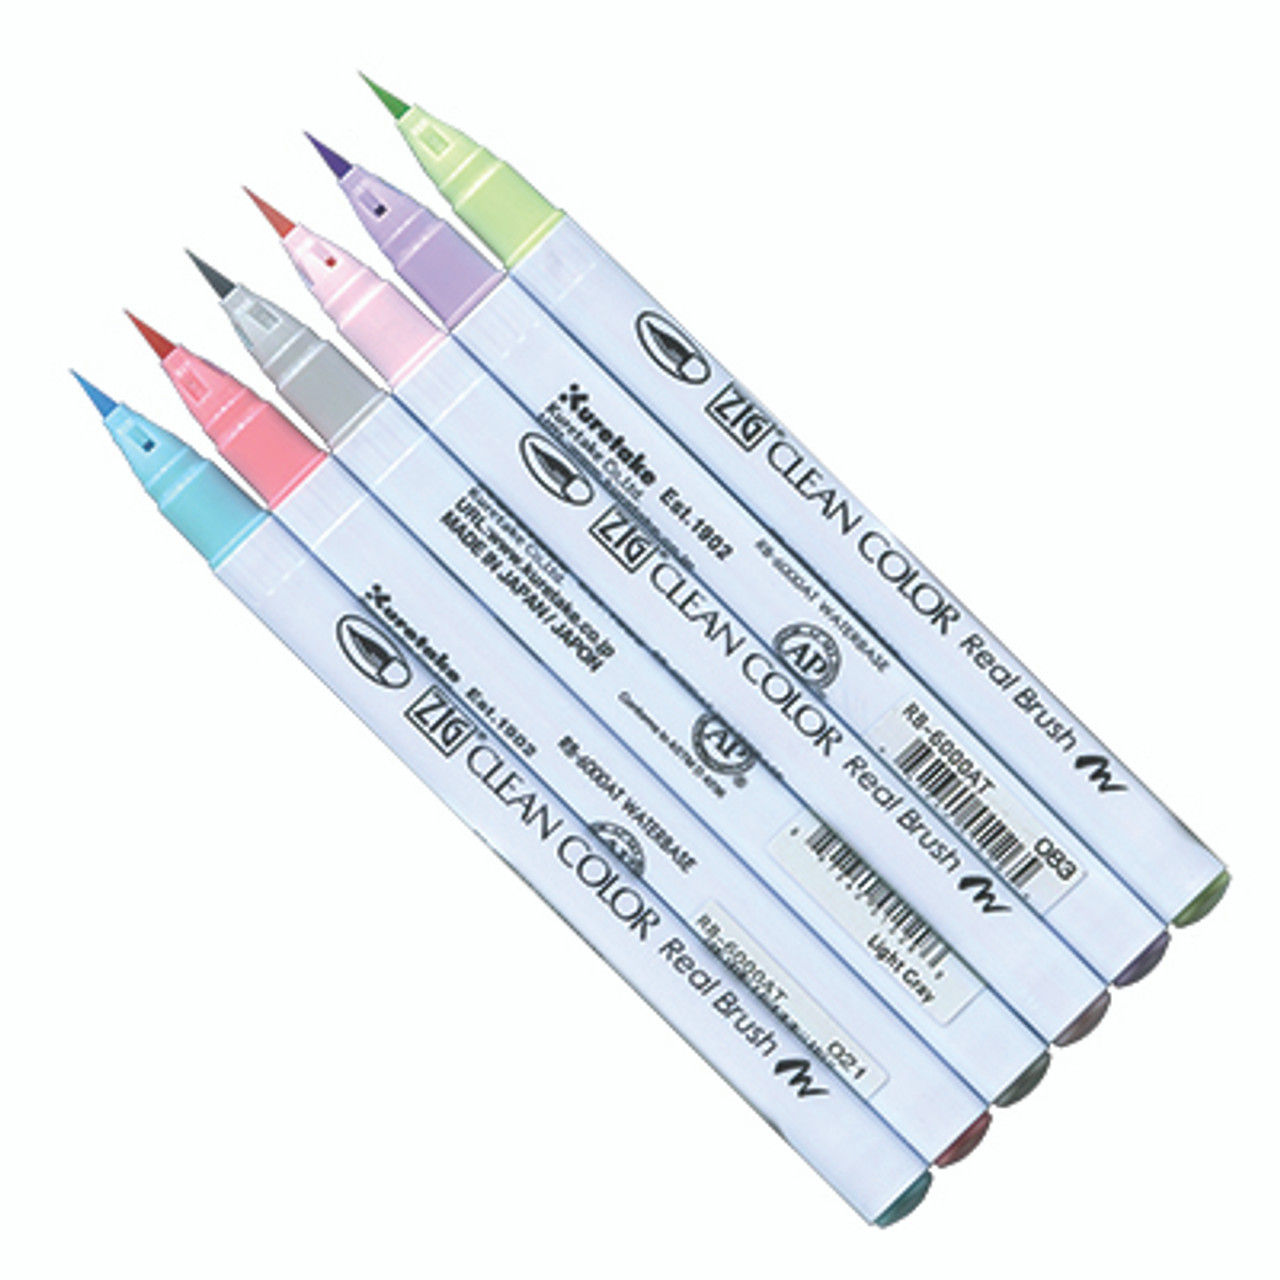 Kuretake Clean Color Real Brush Pen Set - Pastel Colors